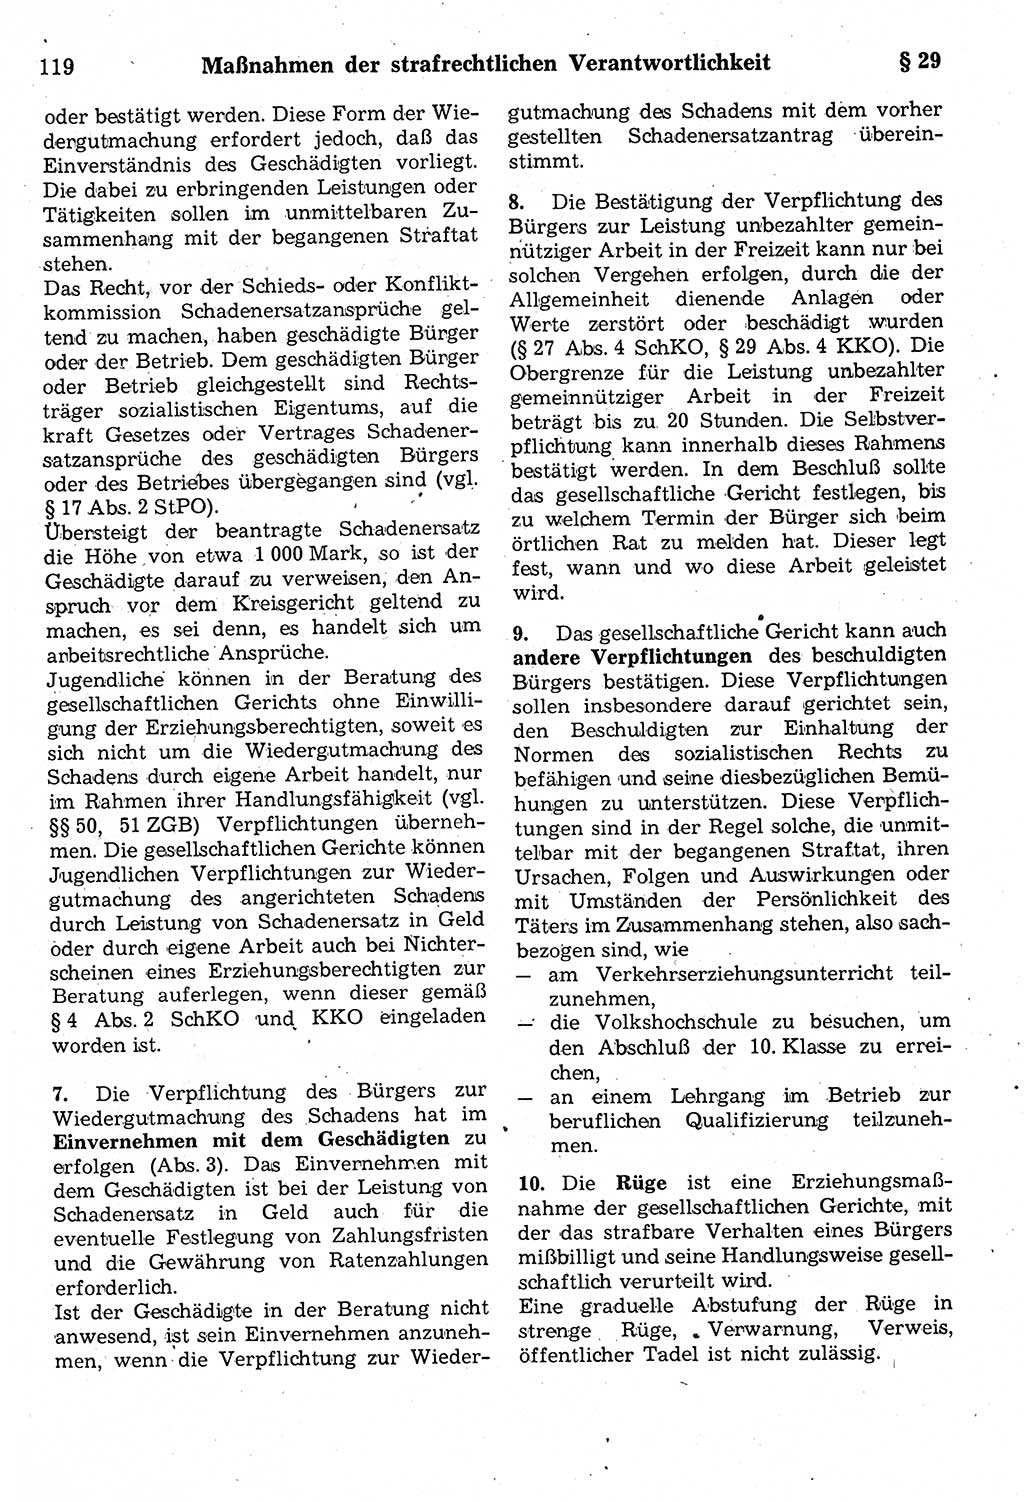 Strafrecht der Deutschen Demokratischen Republik (DDR), Kommentar zum Strafgesetzbuch (StGB) 1987, Seite 119 (Strafr. DDR Komm. StGB 1987, S. 119)